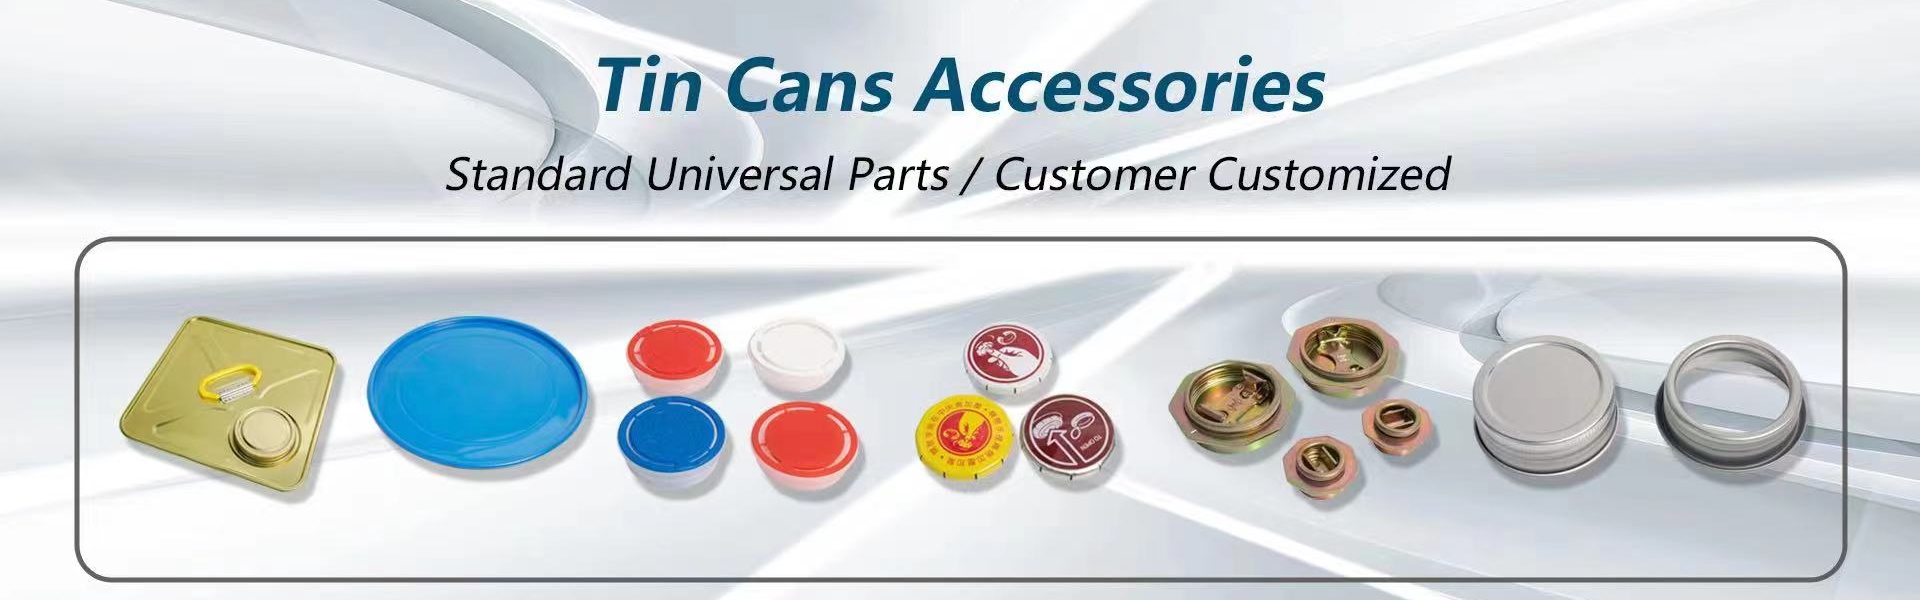 Can, lata lata, estuche de estaño,Jiangxi Xingmao(TCE) Packaging Products Co., LTD